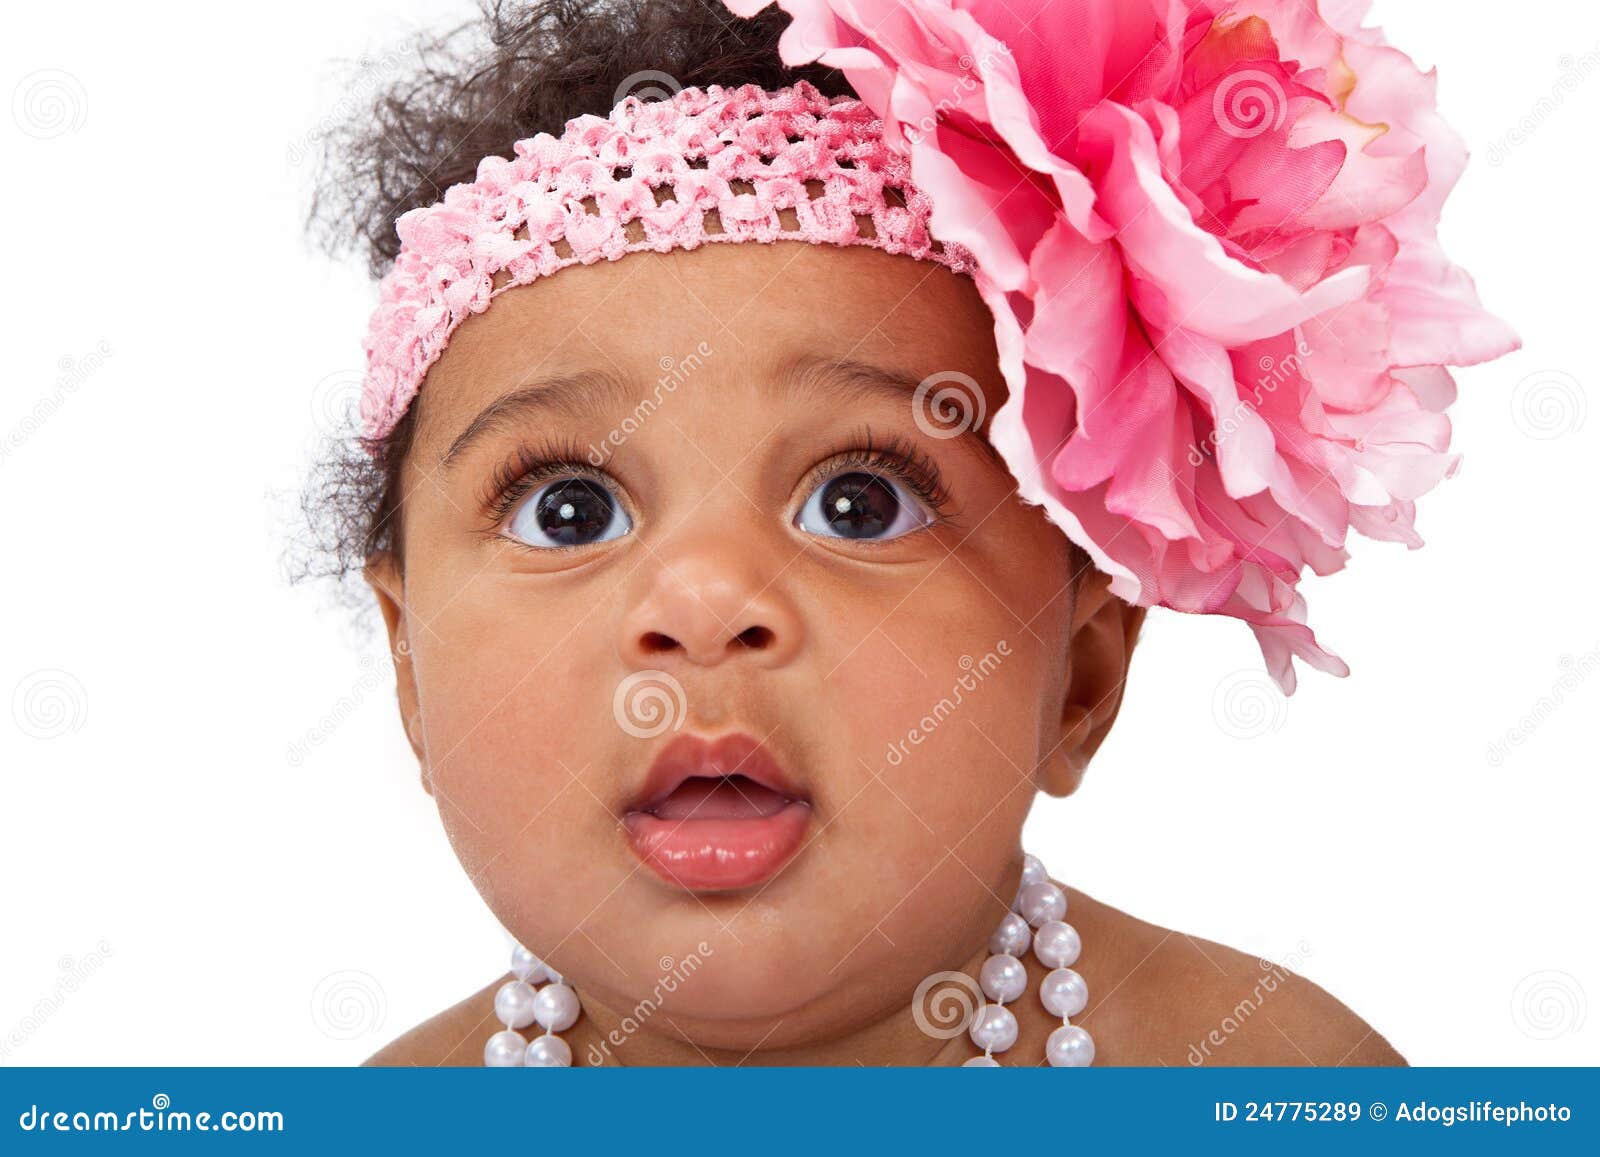 Bandeau bandeau grande fleur bandeau bébé rose bandeau bébé